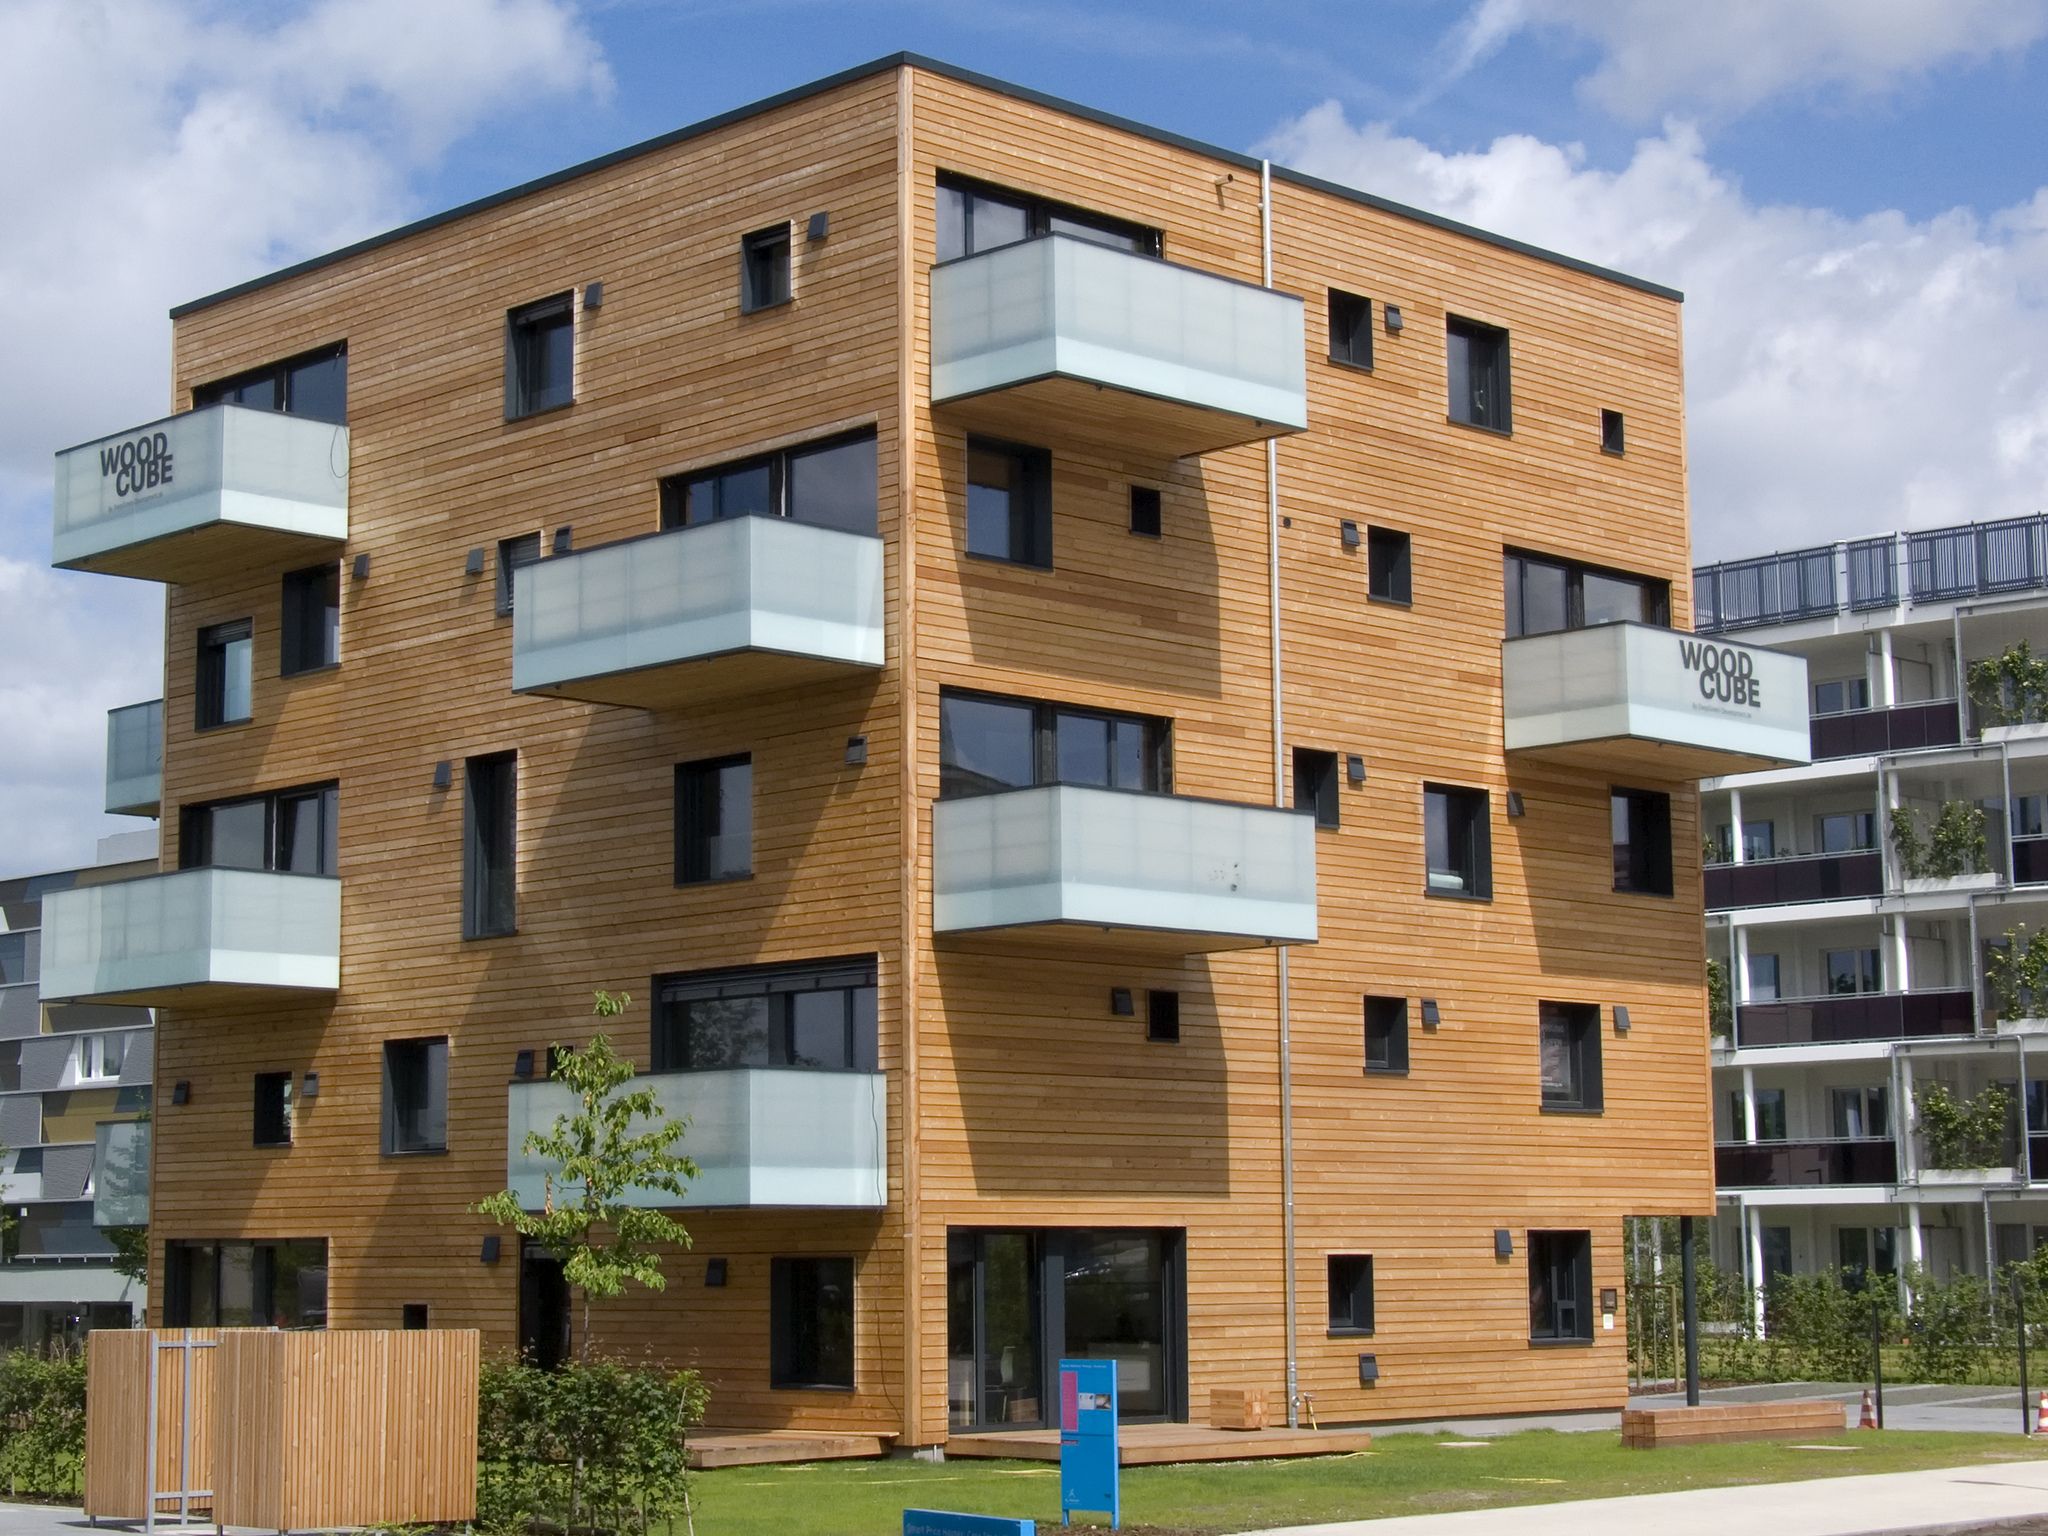 Пятиэтажный деревянный дом в Гамбурге, построенный в 2013 году. В нем всего <nobr class="_">8 квартир</nobr> площадью от 90 до 190 квадратов